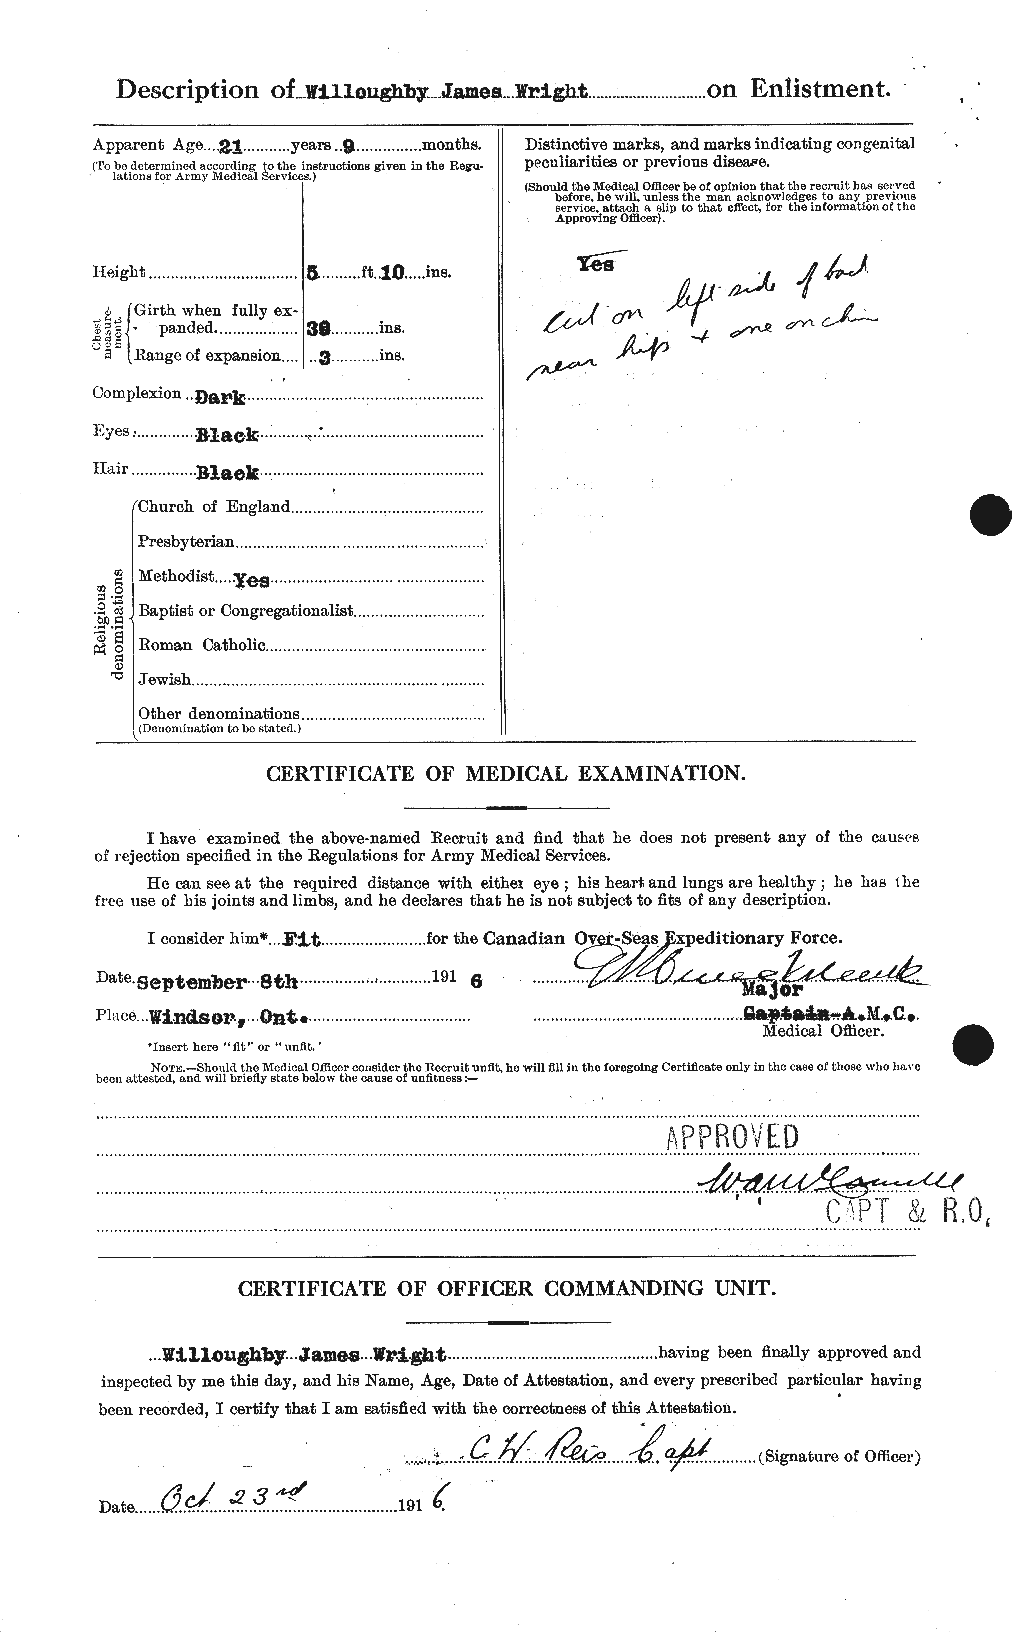 Dossiers du Personnel de la Première Guerre mondiale - CEC 688806b